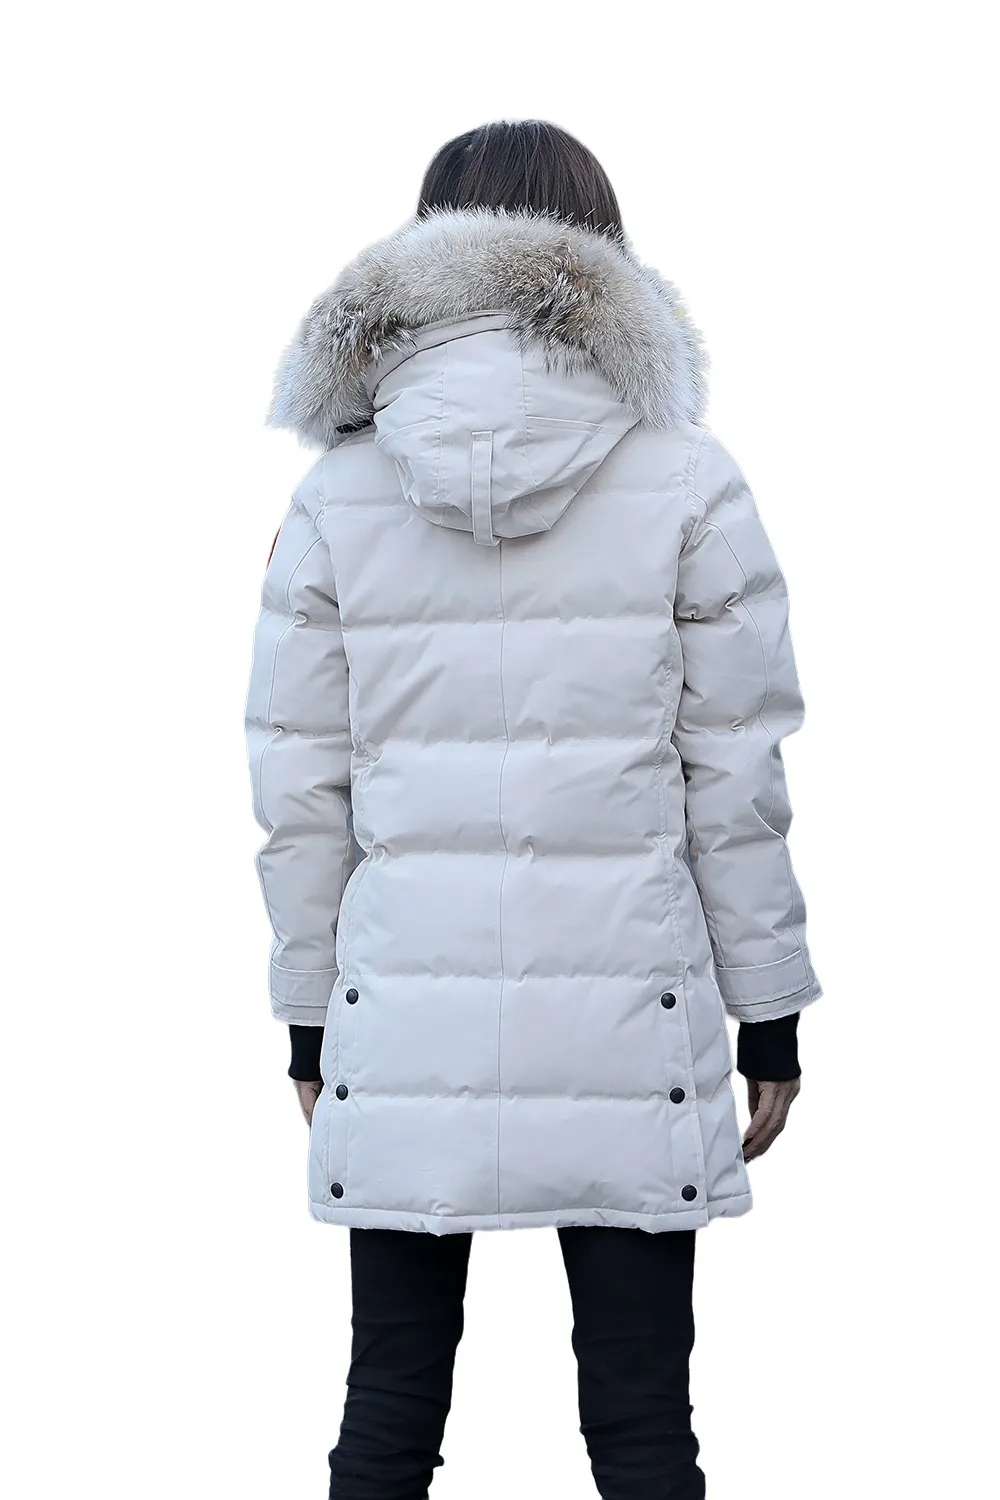 女性パーカーダウンジャケットコート長い防風ガチョウ濃い暖かい毛皮取り外し可能なジャケットカラー冬冬巻きレアルウルフアークティックフードトリムドゥードゥーンマントーIJC1